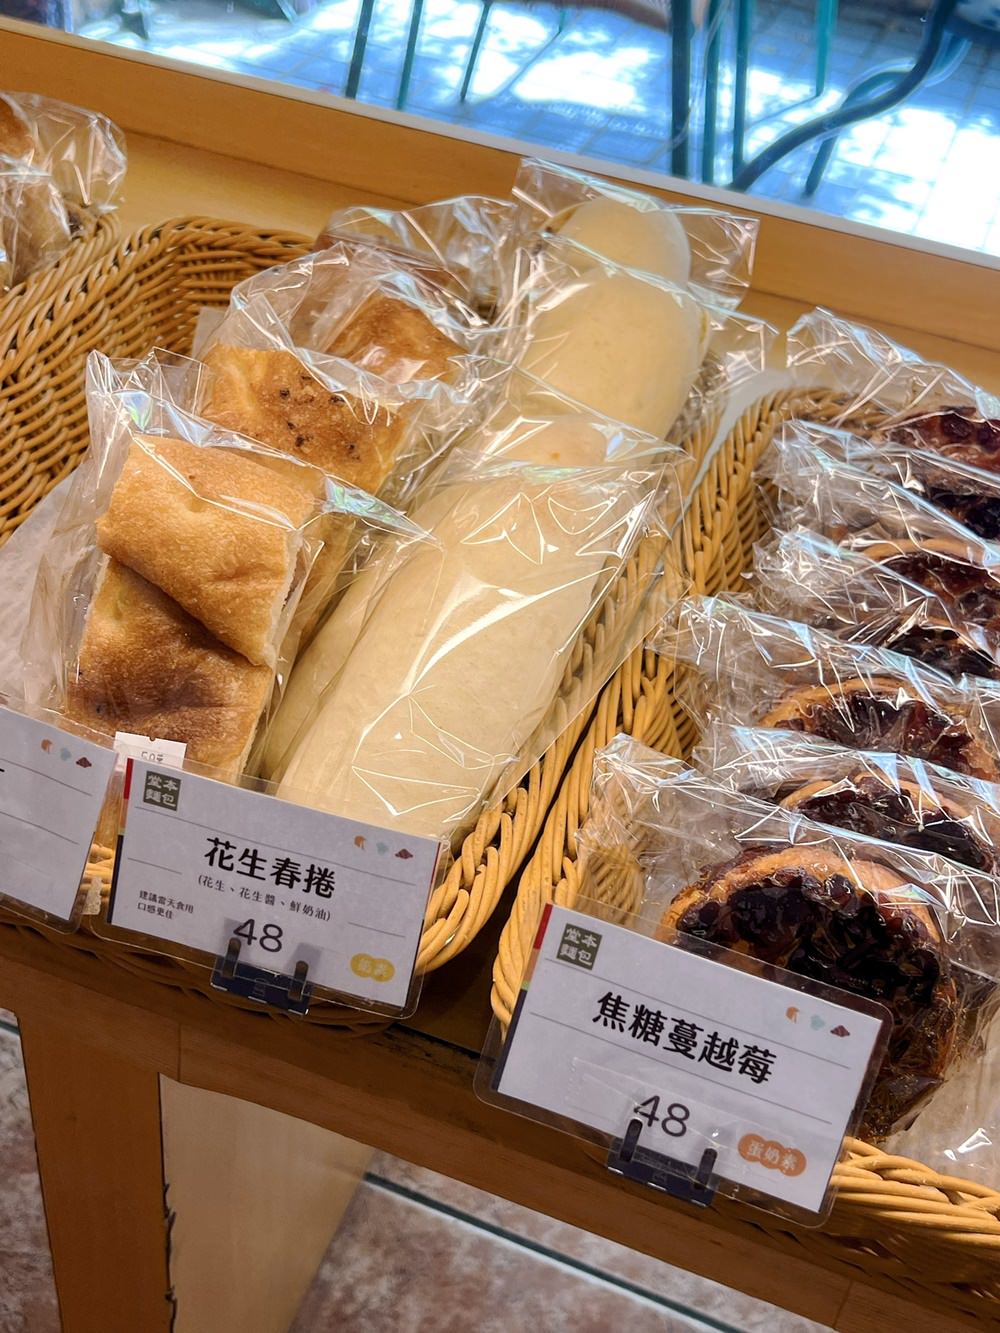 堂本麵包 2